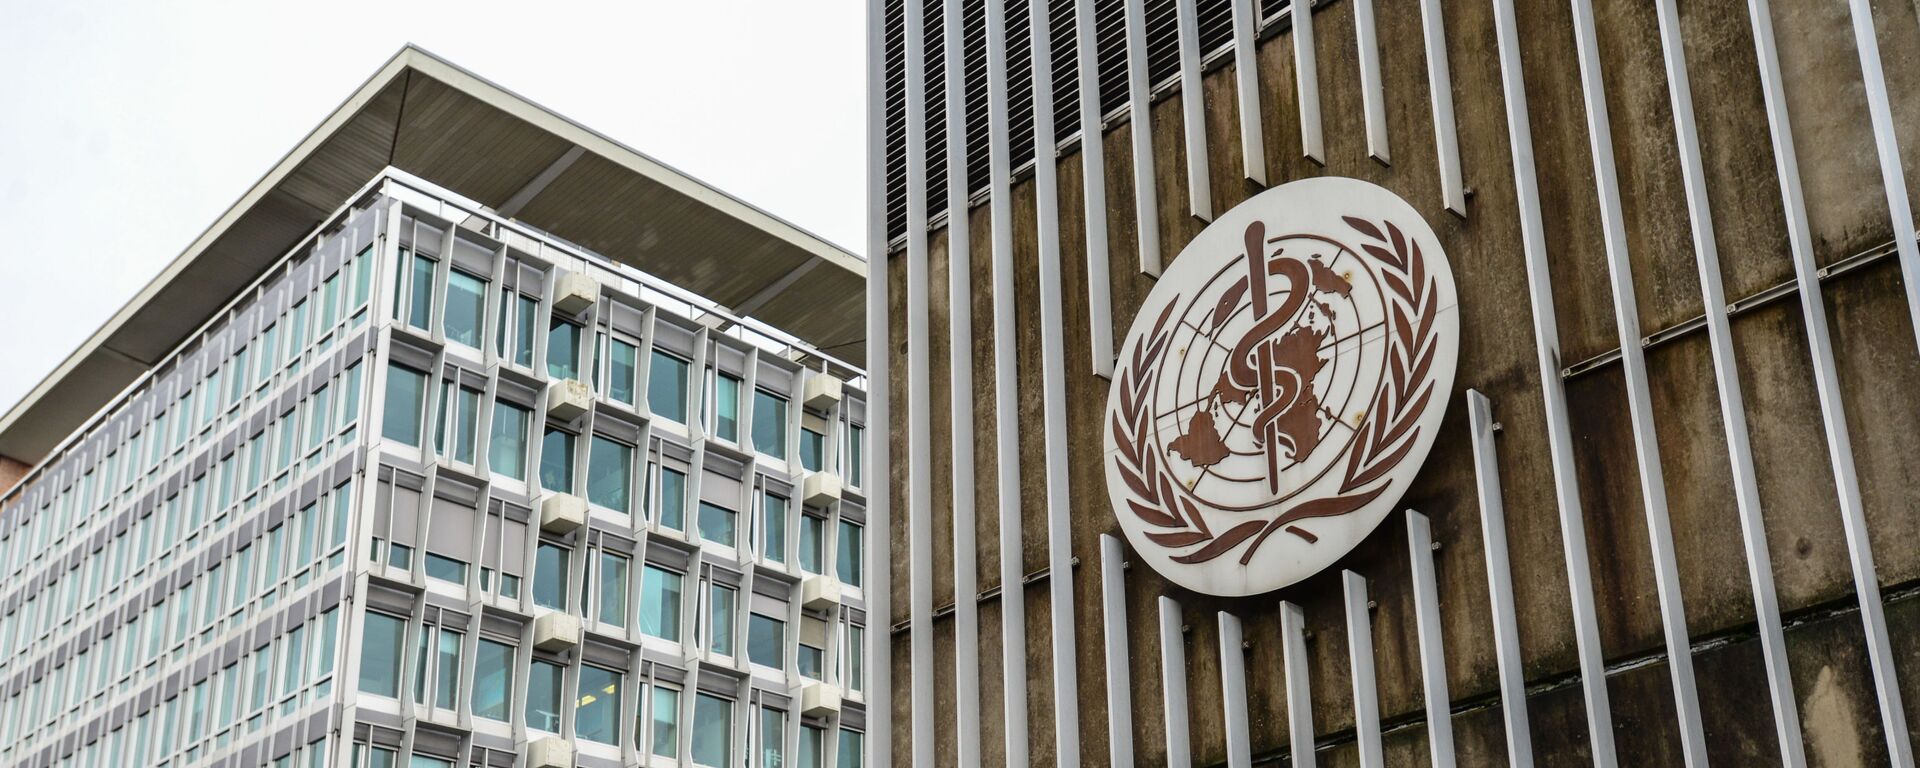 Здание штаб-квартиры Всемирной организации здравоохранения в Женеве.  - Sputnik Latvija, 1920, 24.05.2021